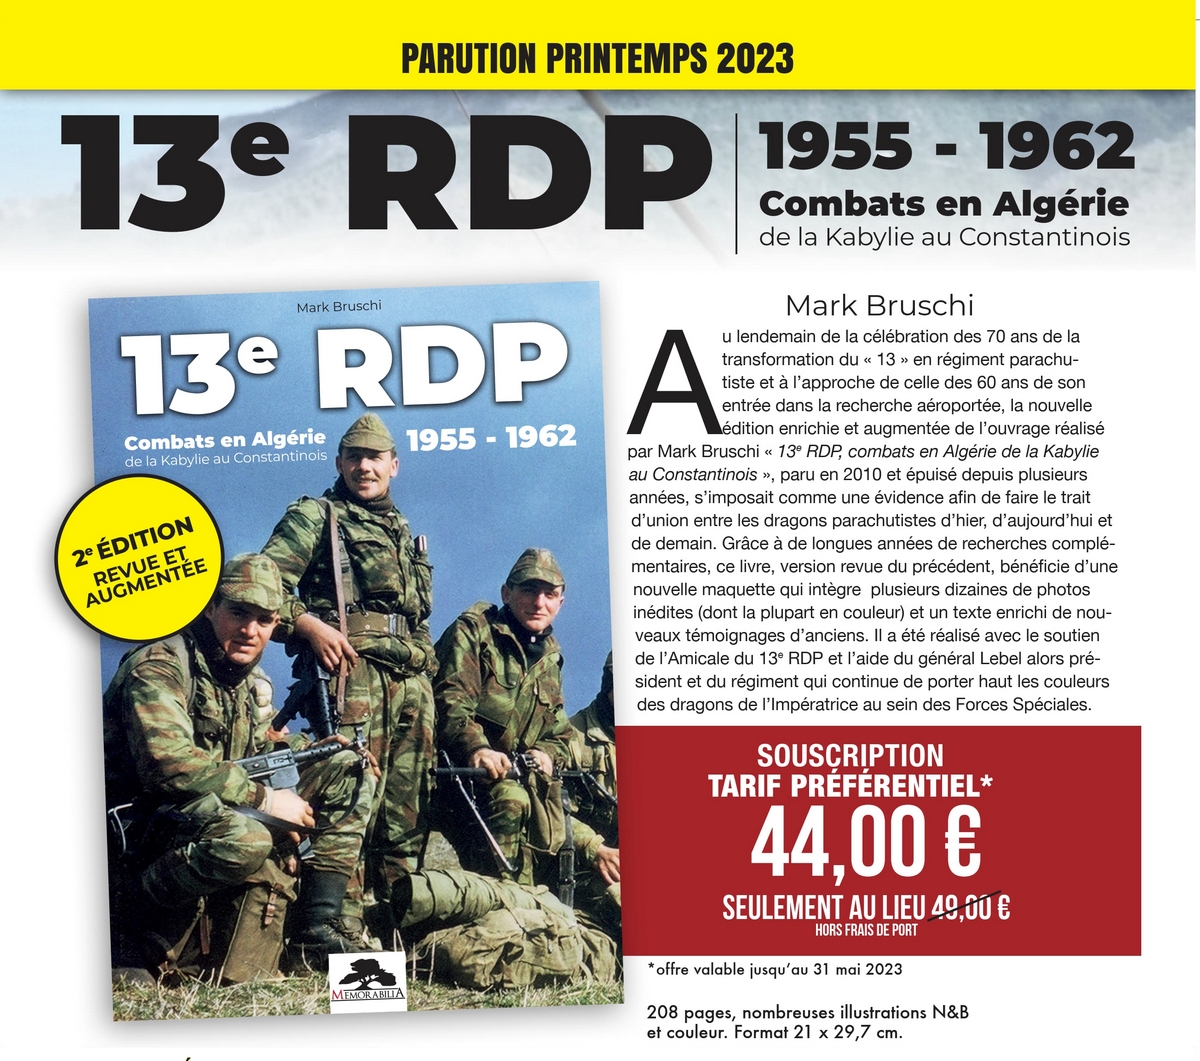 13 RDP - Combats Algérie - 1955-1962